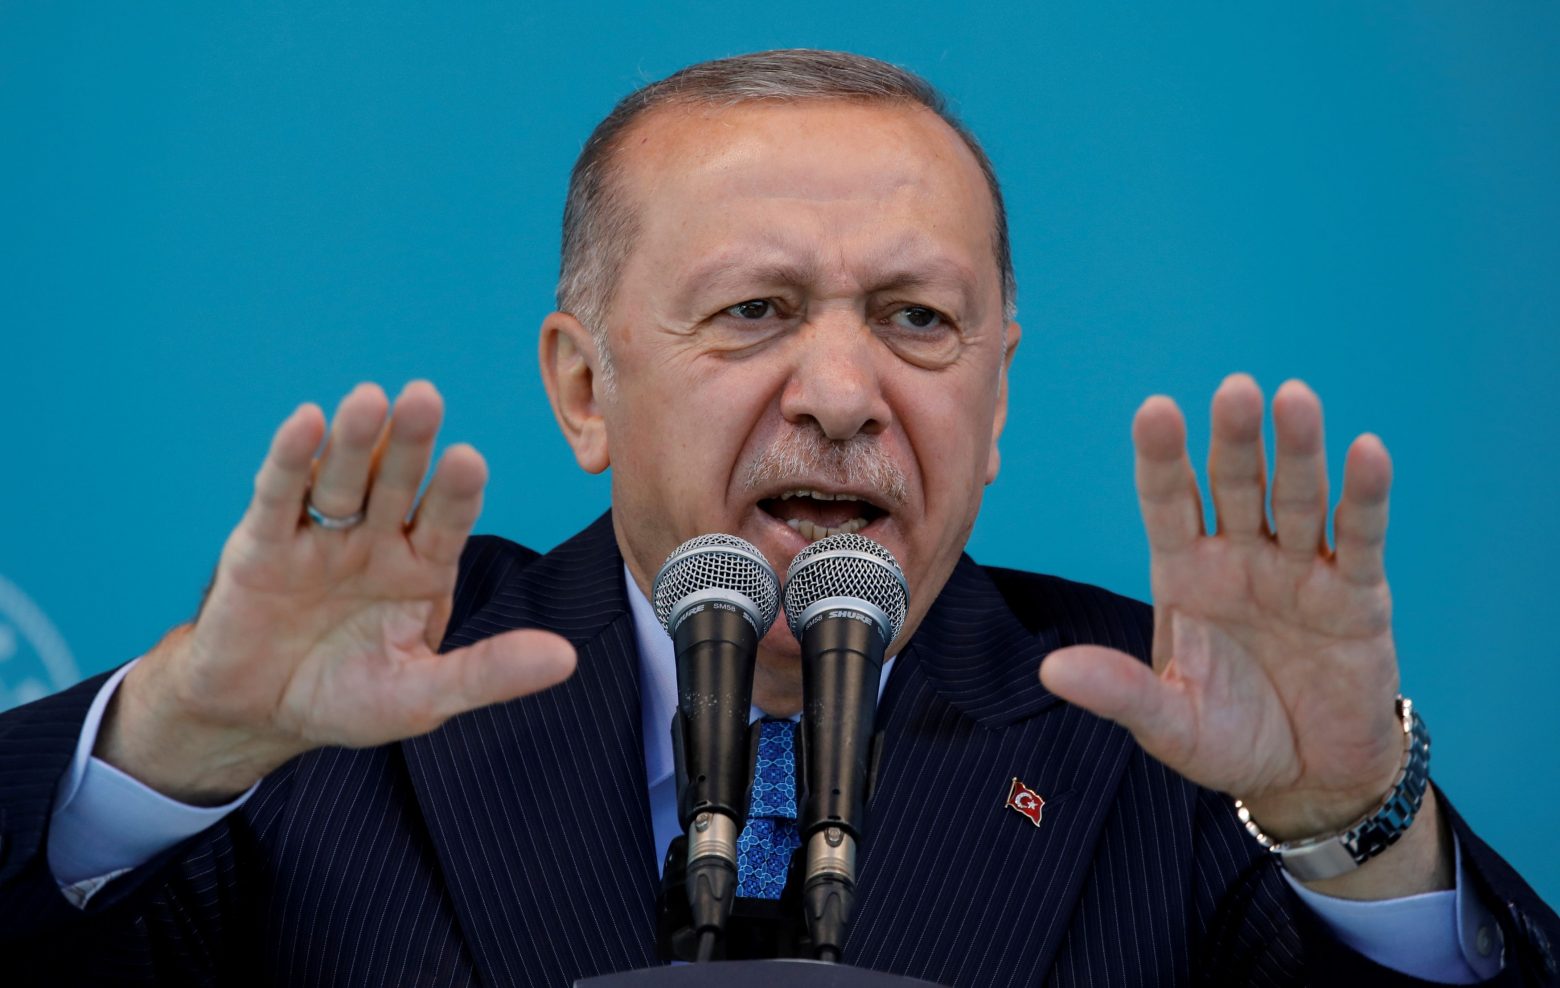 Τουρκία - Η οικονομική κρίση πλήττει πολιτικά τον Ερντογάν, σύμφωνα με δημοσκοπήσεις για τις εκλογές του 2023